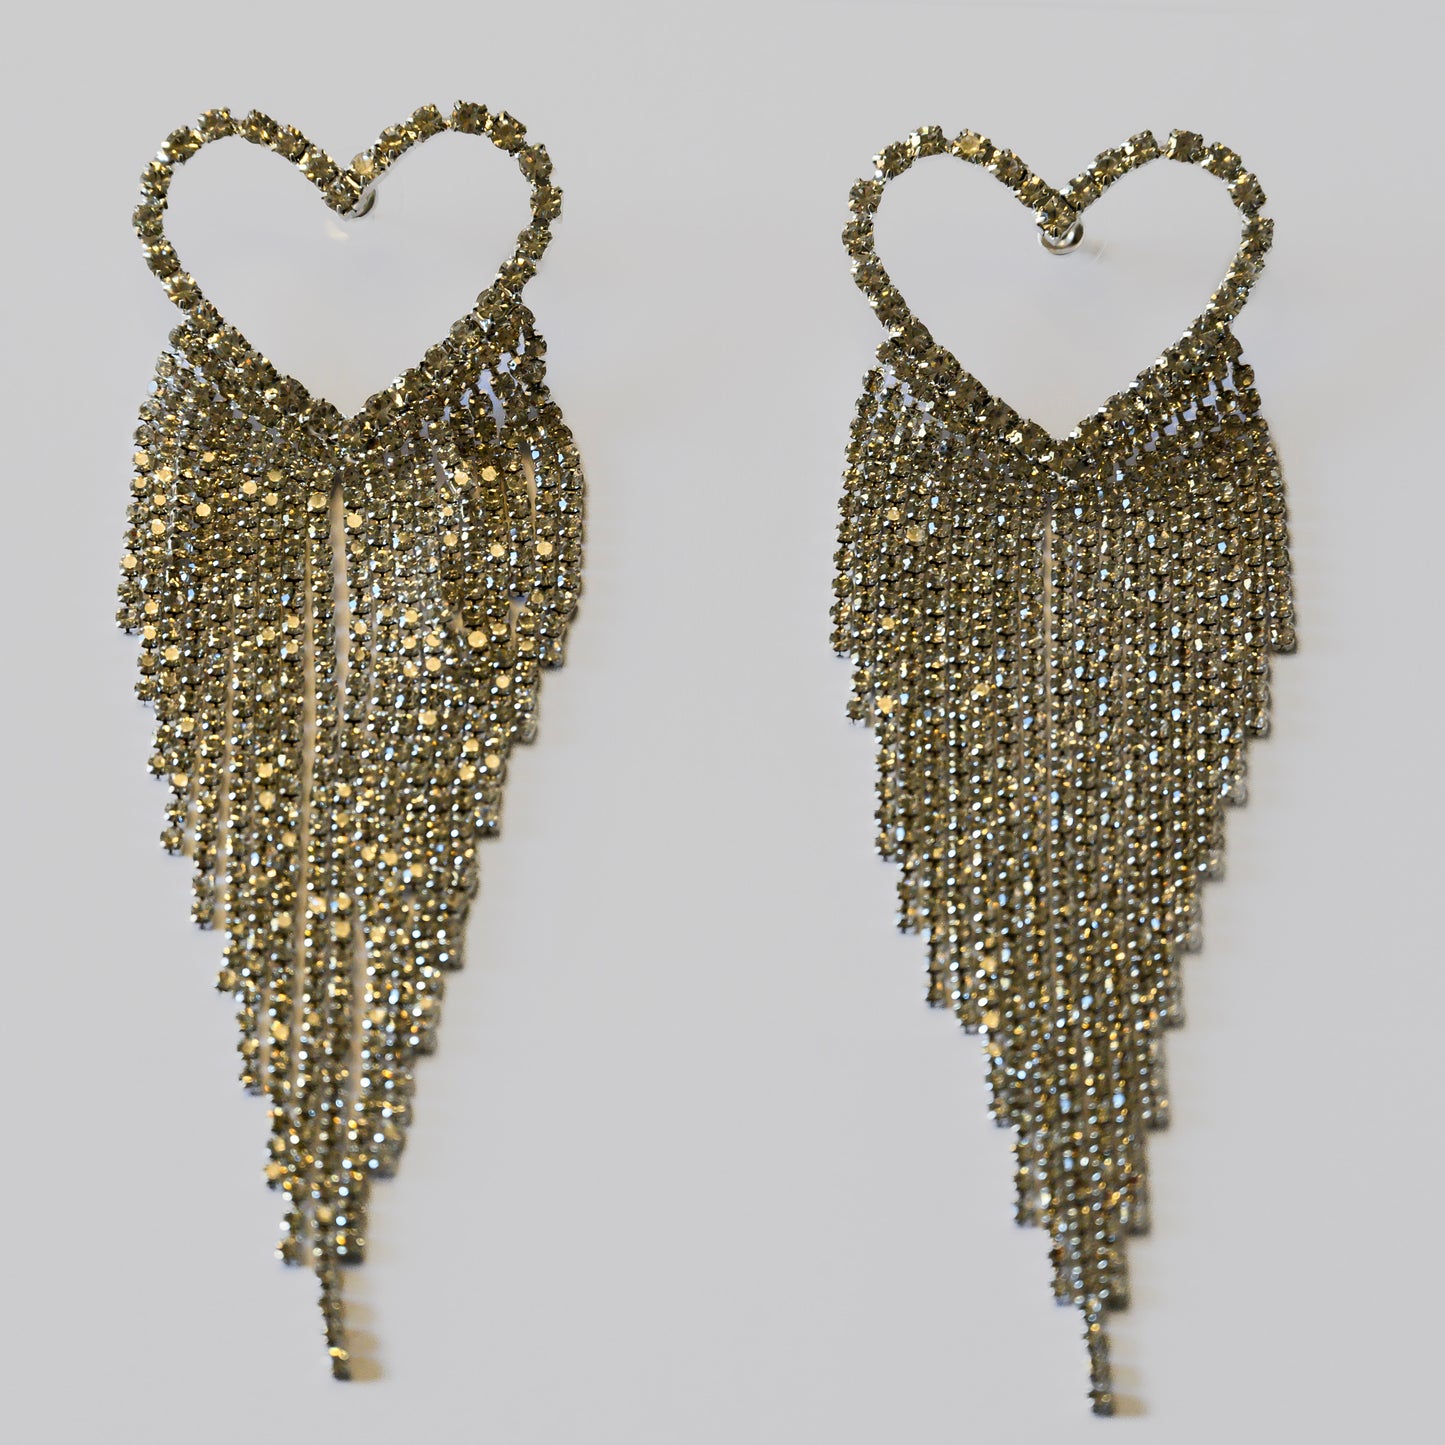 Gatsby earrings